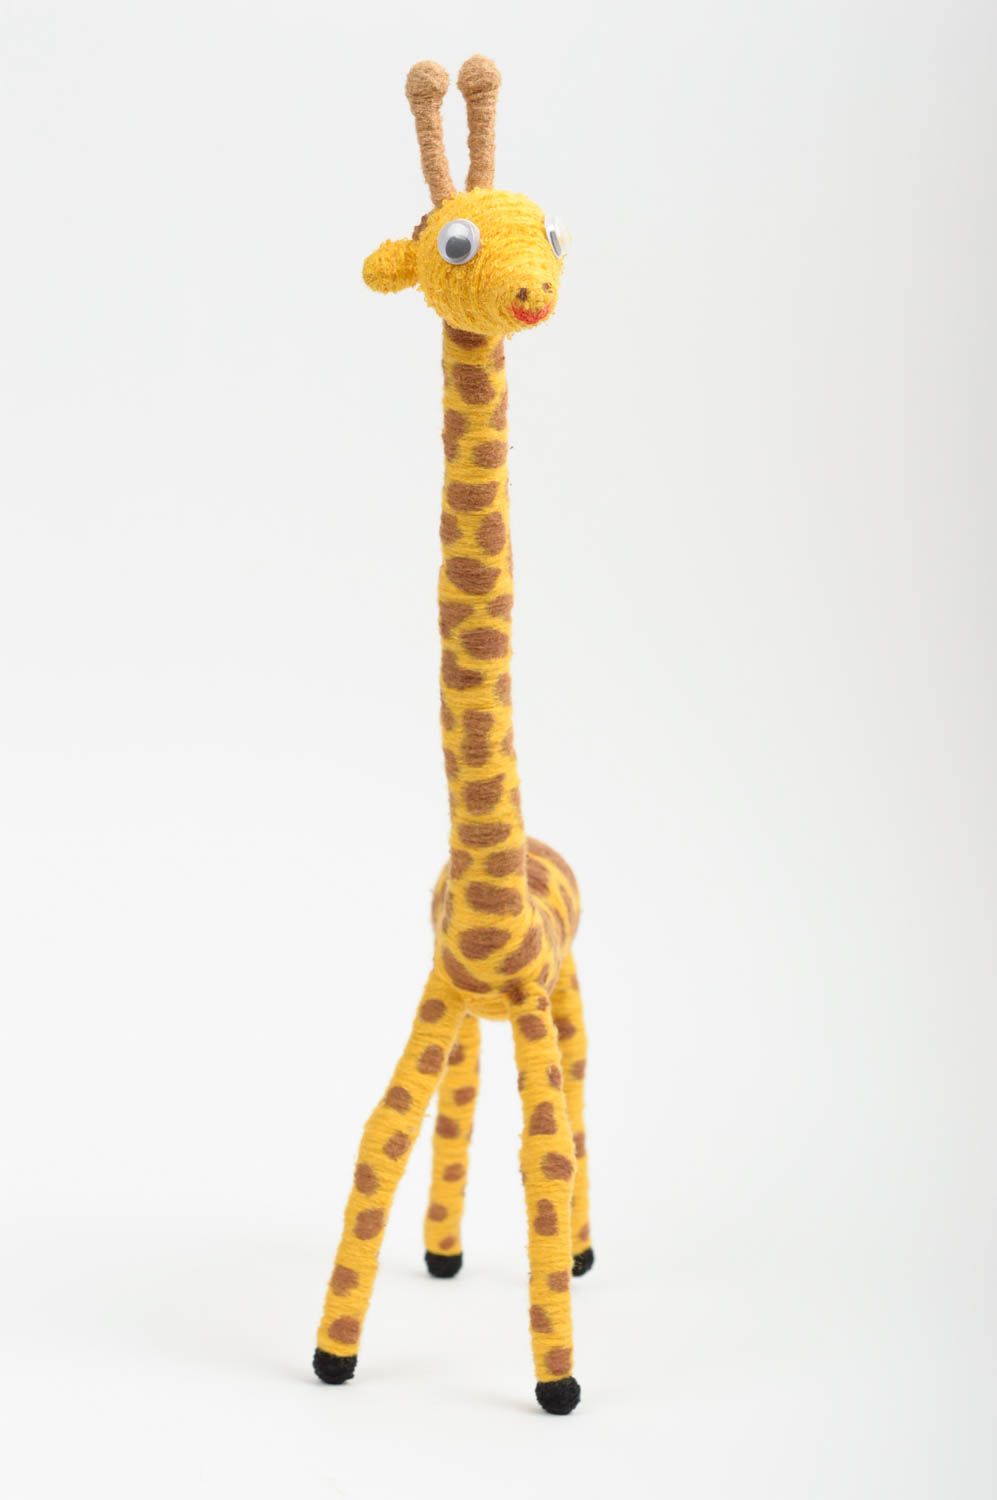 Мягкая игрушка ручной работы детская игрушка в виде жирафа подарок ребенку фото 2